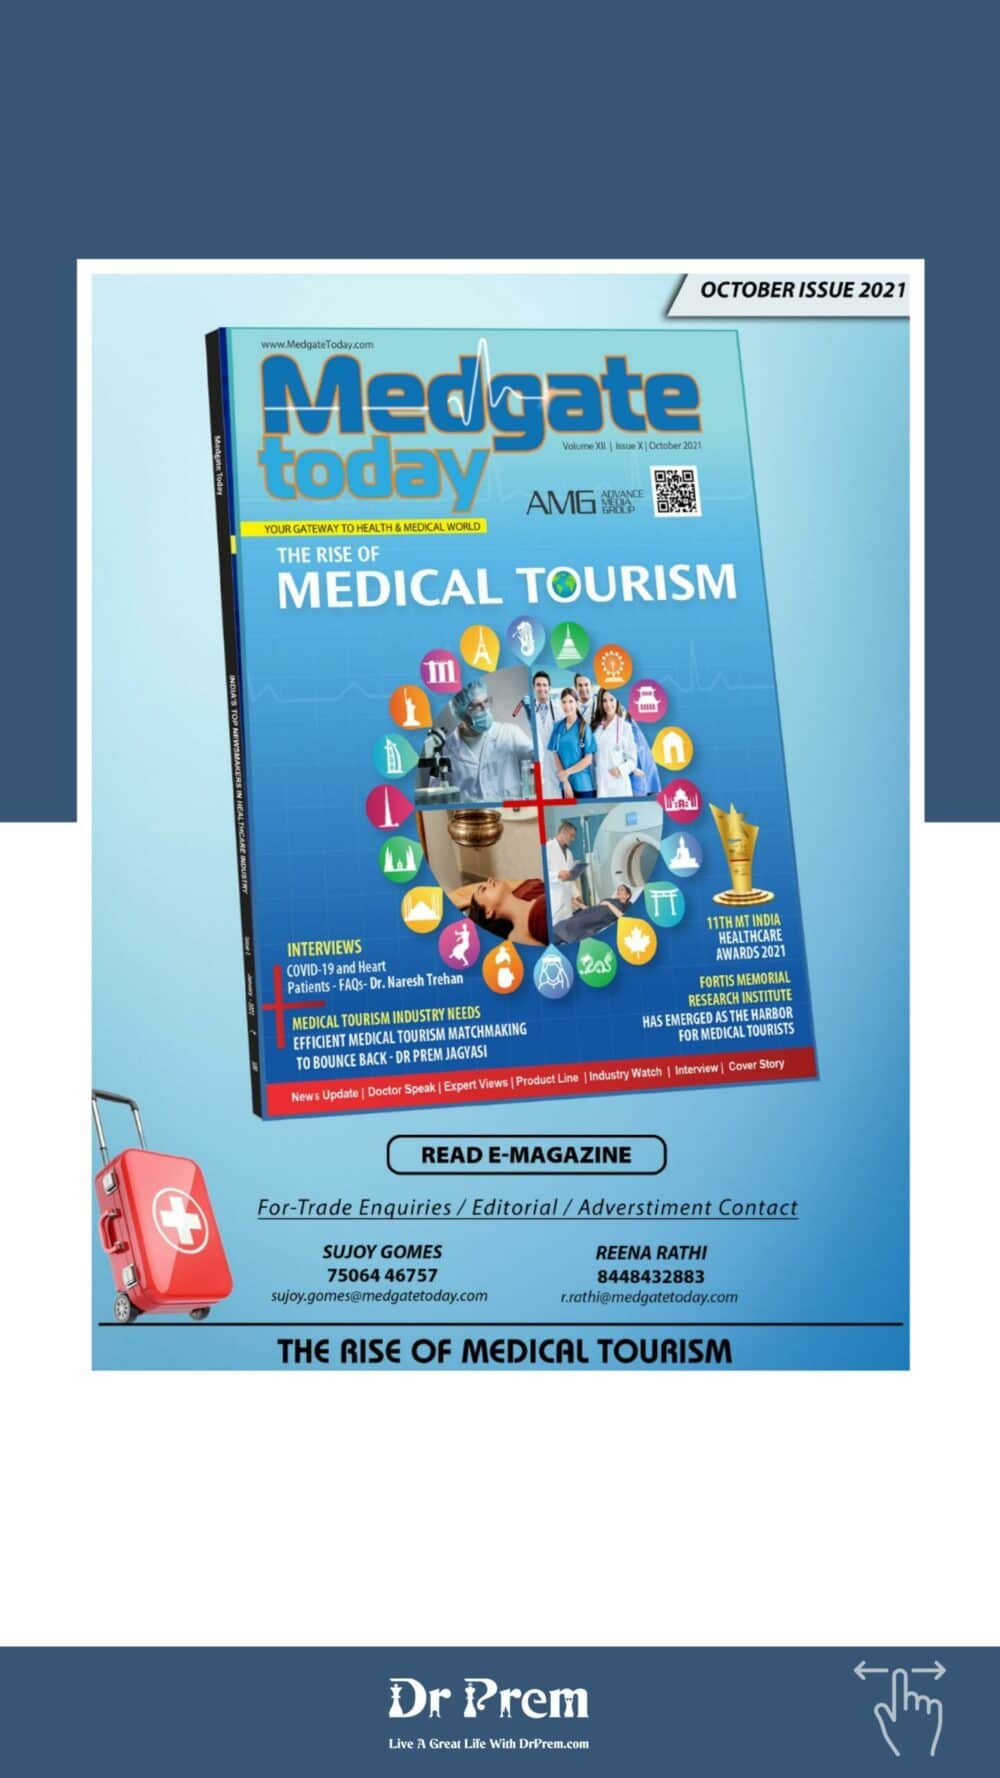 Medical Tourism Matchmaking – Insights by Dr Prem Jagyasi10